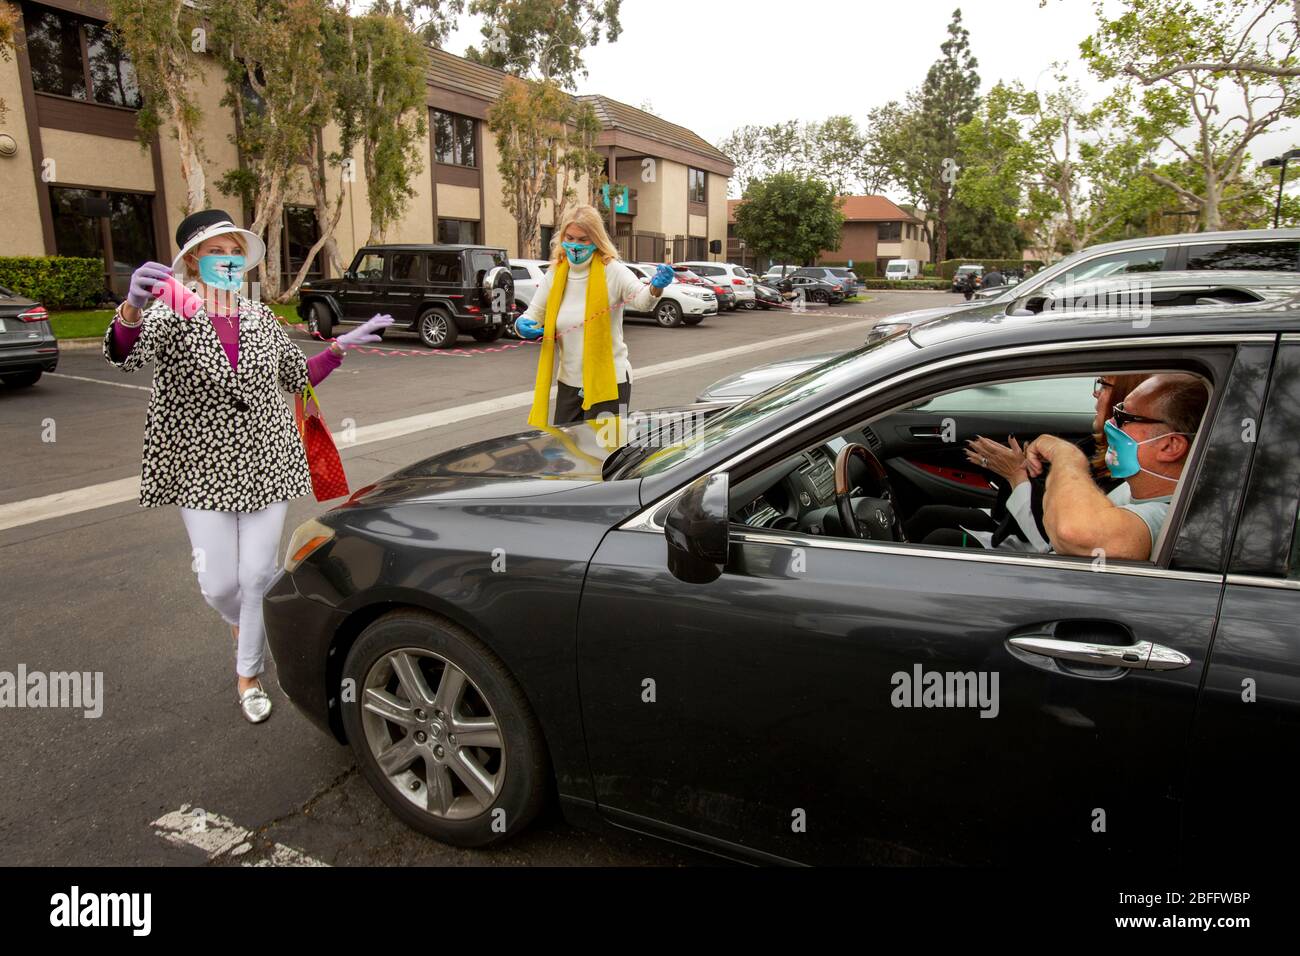 Les bénévoles portent un masque de sécurité en raison de l'éclosion de coronavirus ou de COVID-19 lorsqu'ils décorent des voitures arrivant avec des rubans dans un service de Pâques en voiture dans un parc de bureaux de Santa Ana, Californie. Banque D'Images